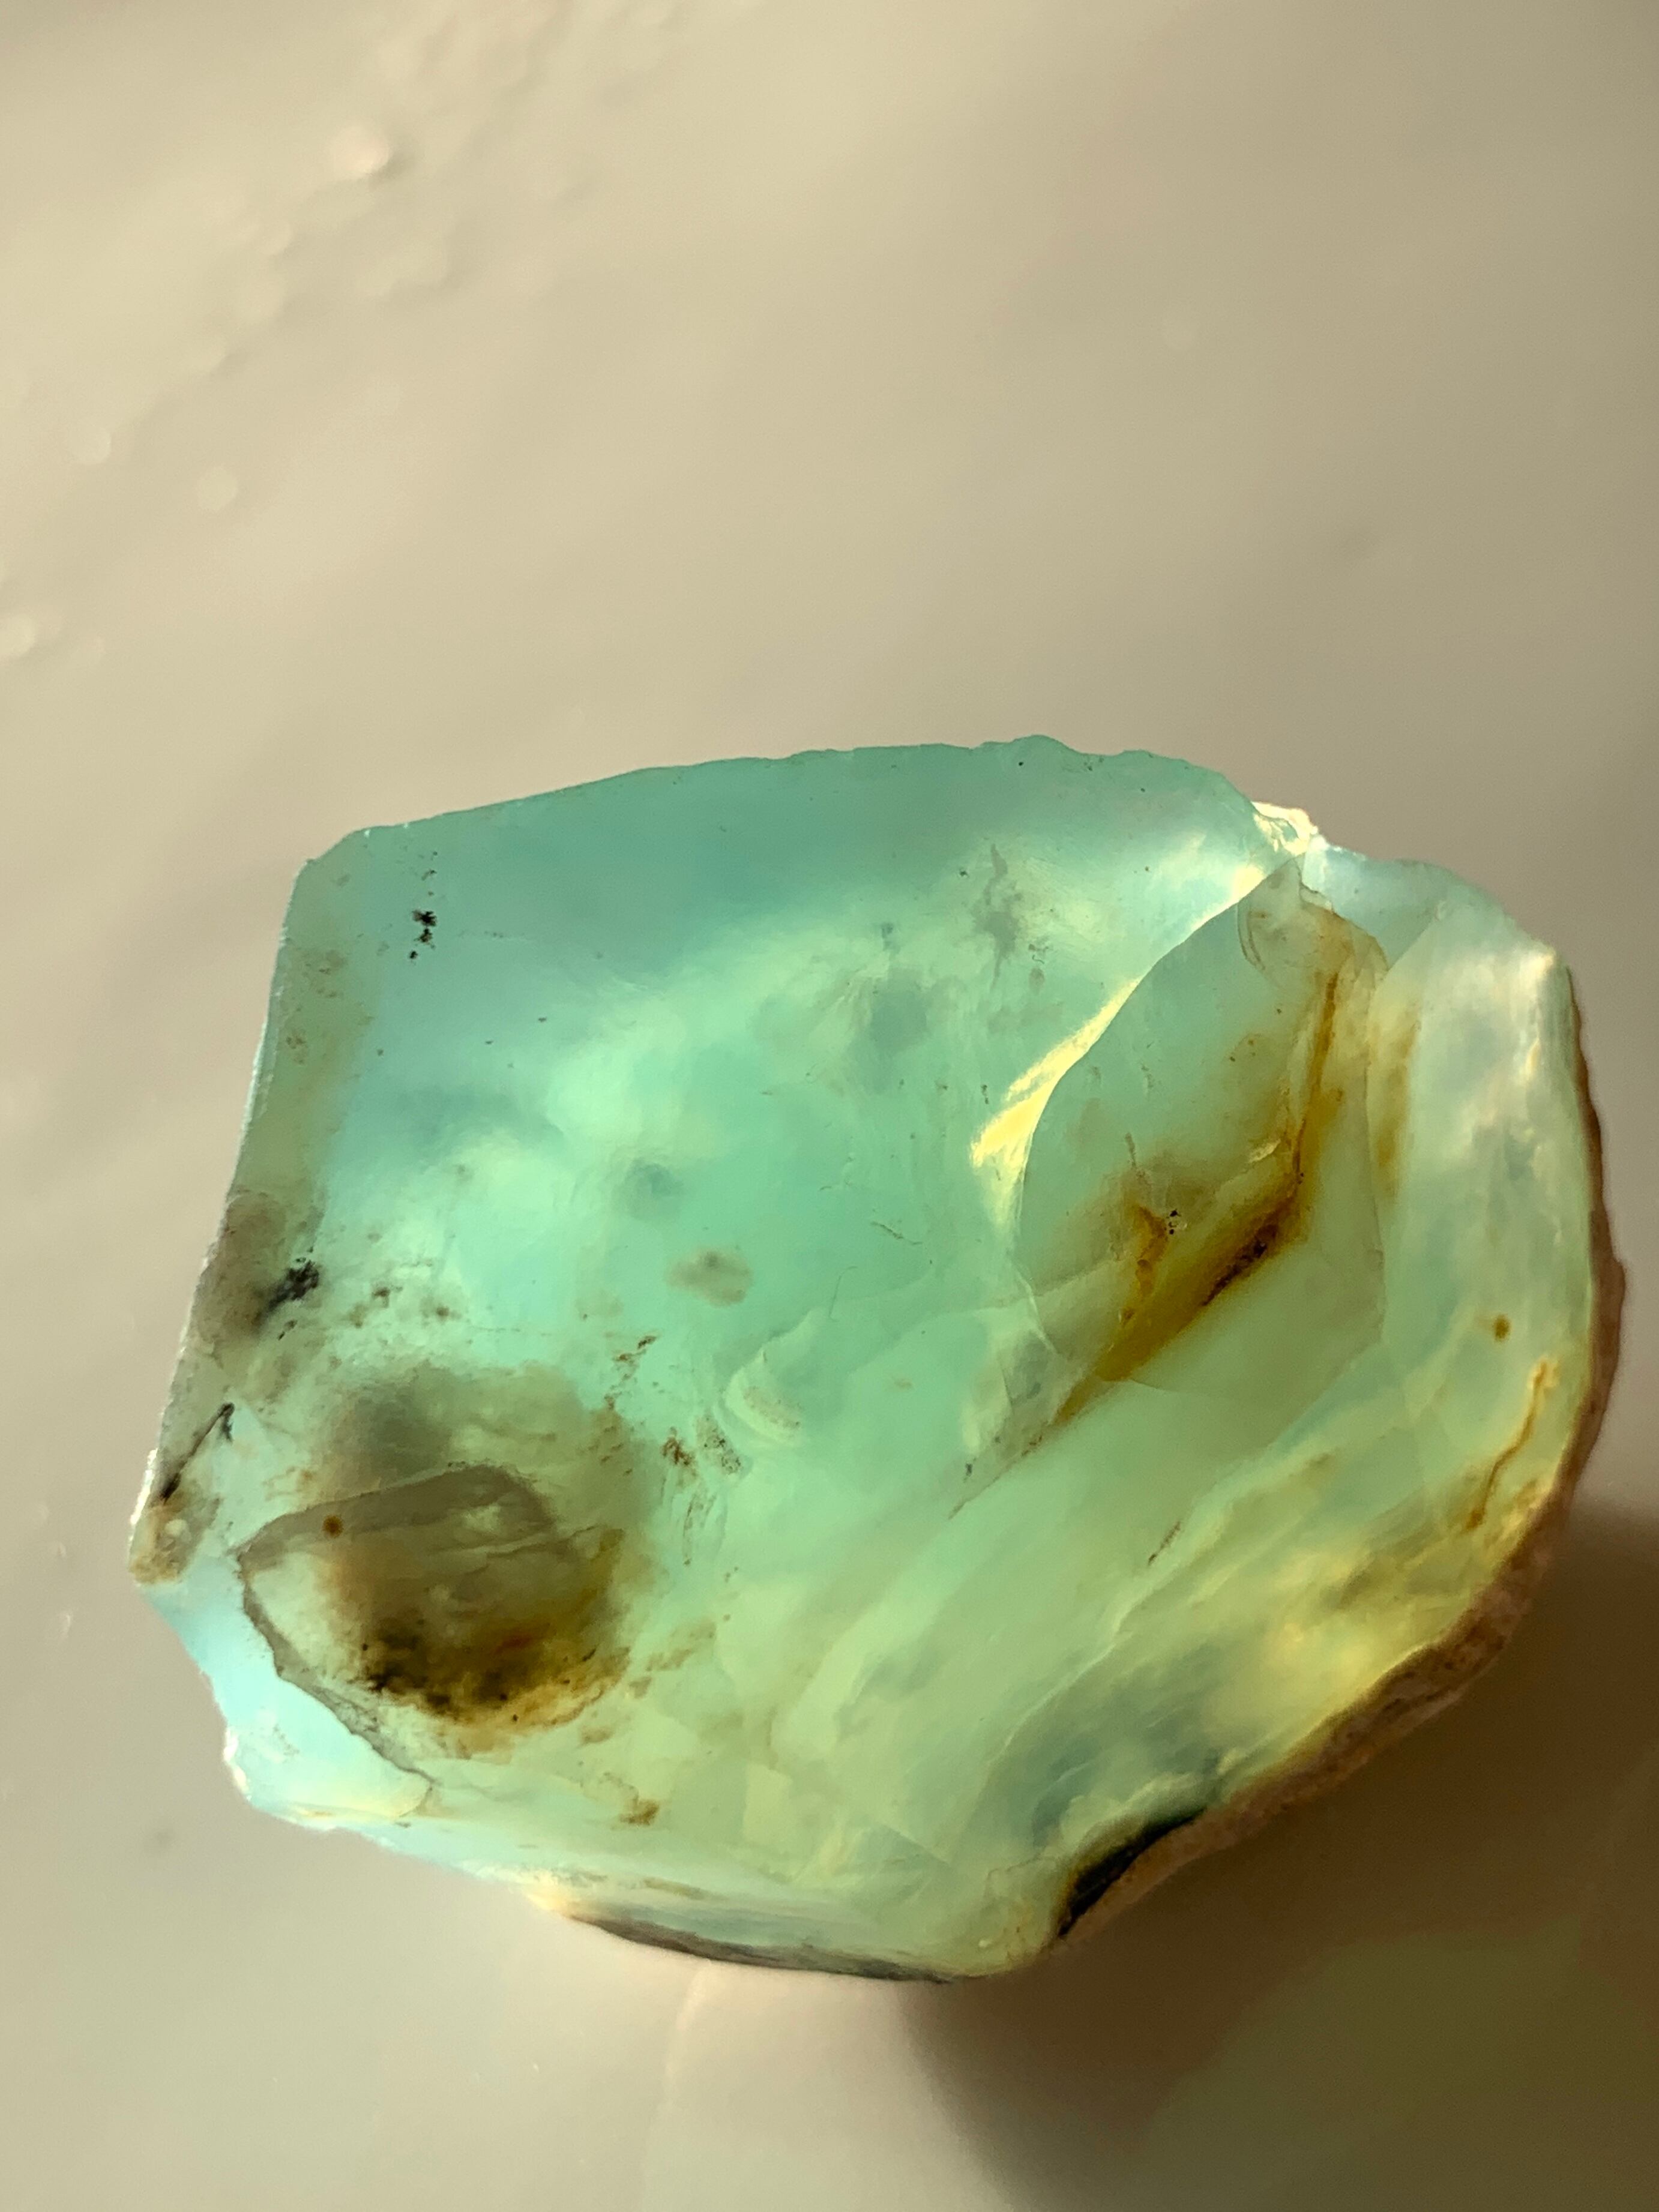 ペルー産ブルーオパール原石 | komichi コミチの石